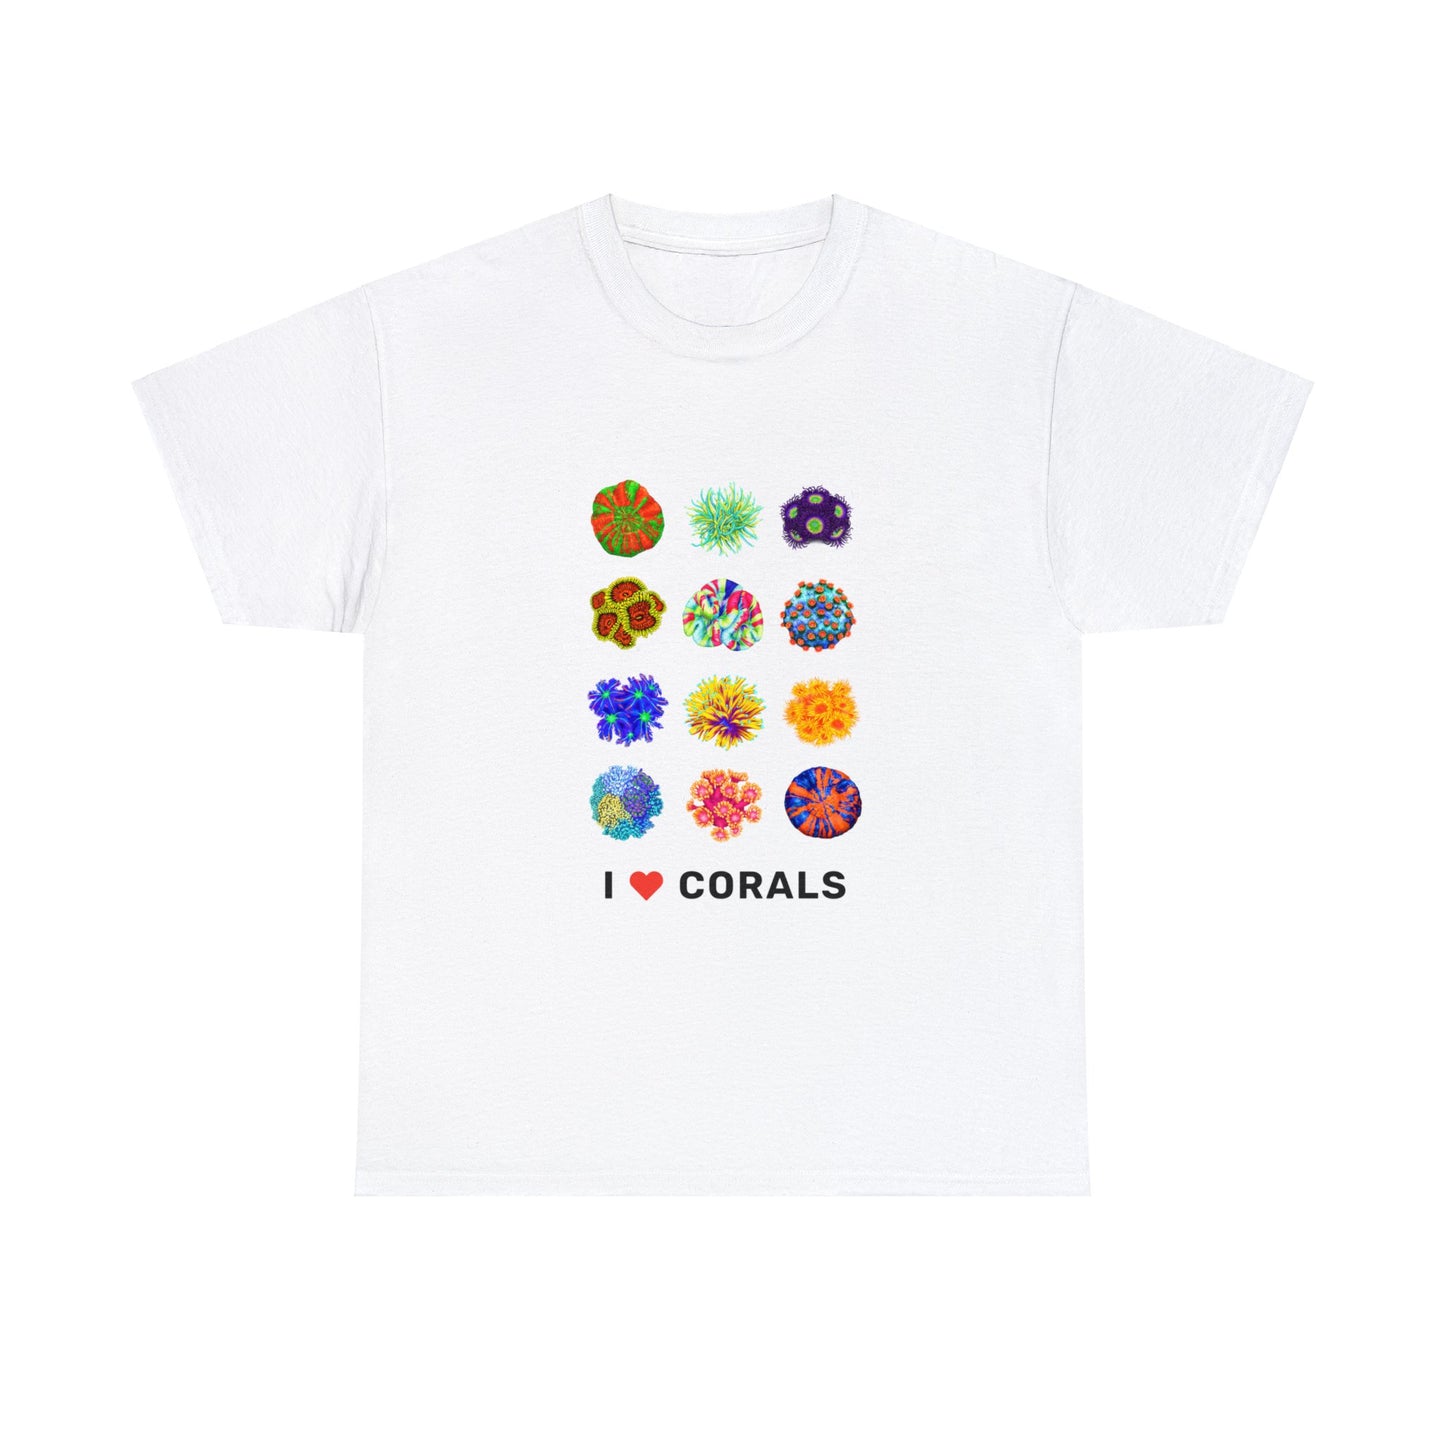 I Love Corals Shirt